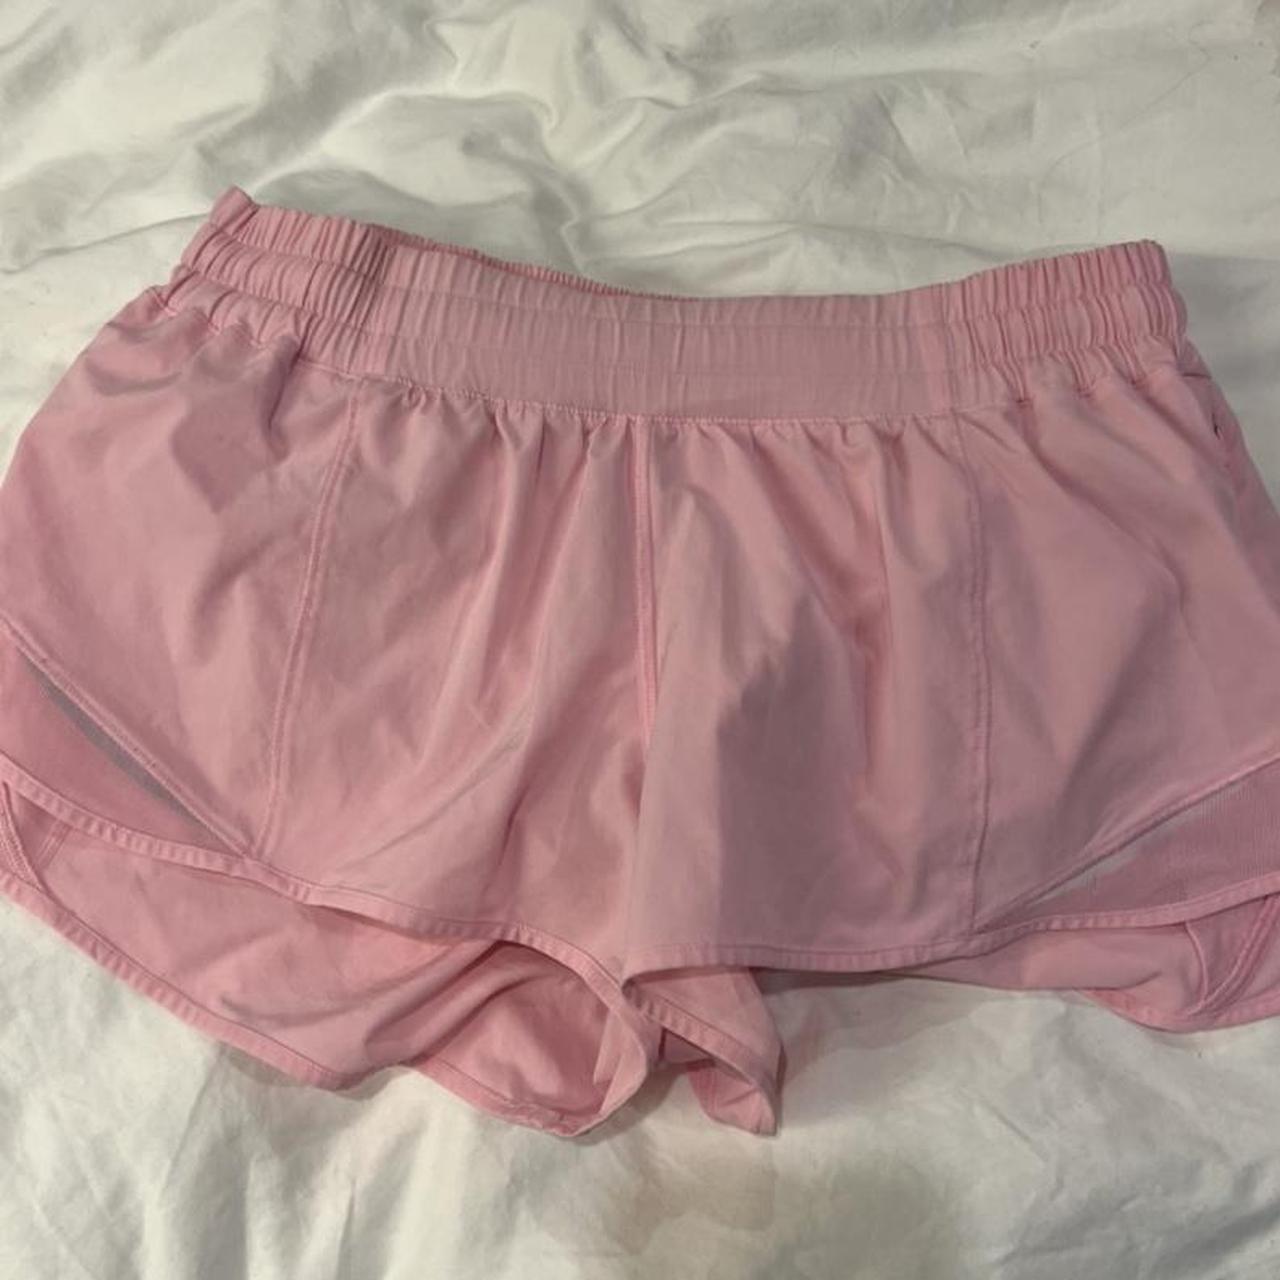 Lululemon hotty hot shorts size 2 rare pinkish red - Depop